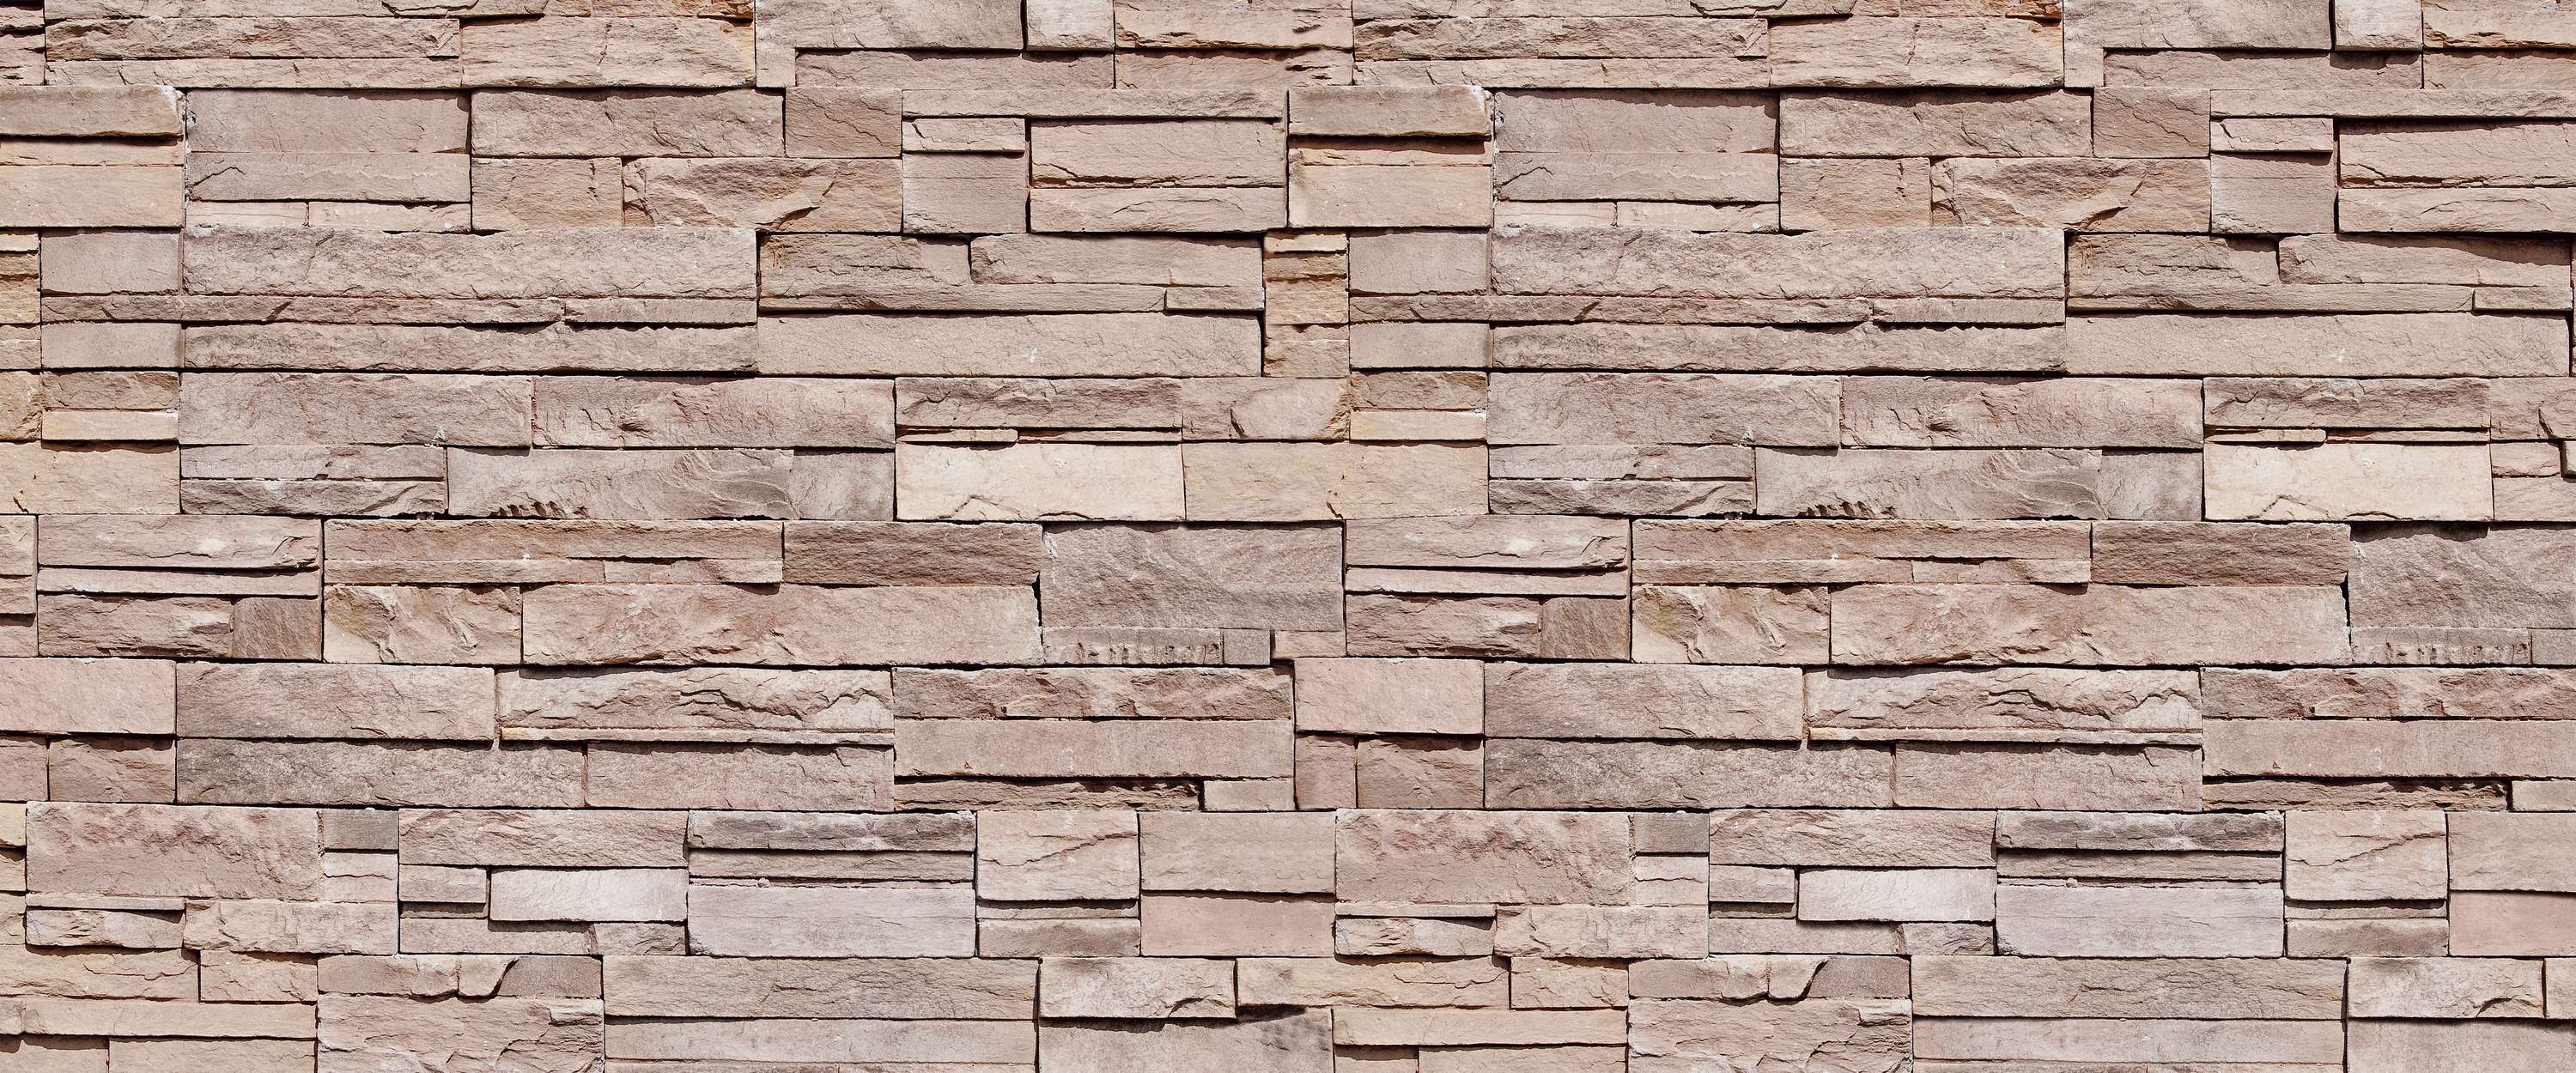             Papier peint panoramique 3D aspect pierre, mur de pierres sèches marron clair
        